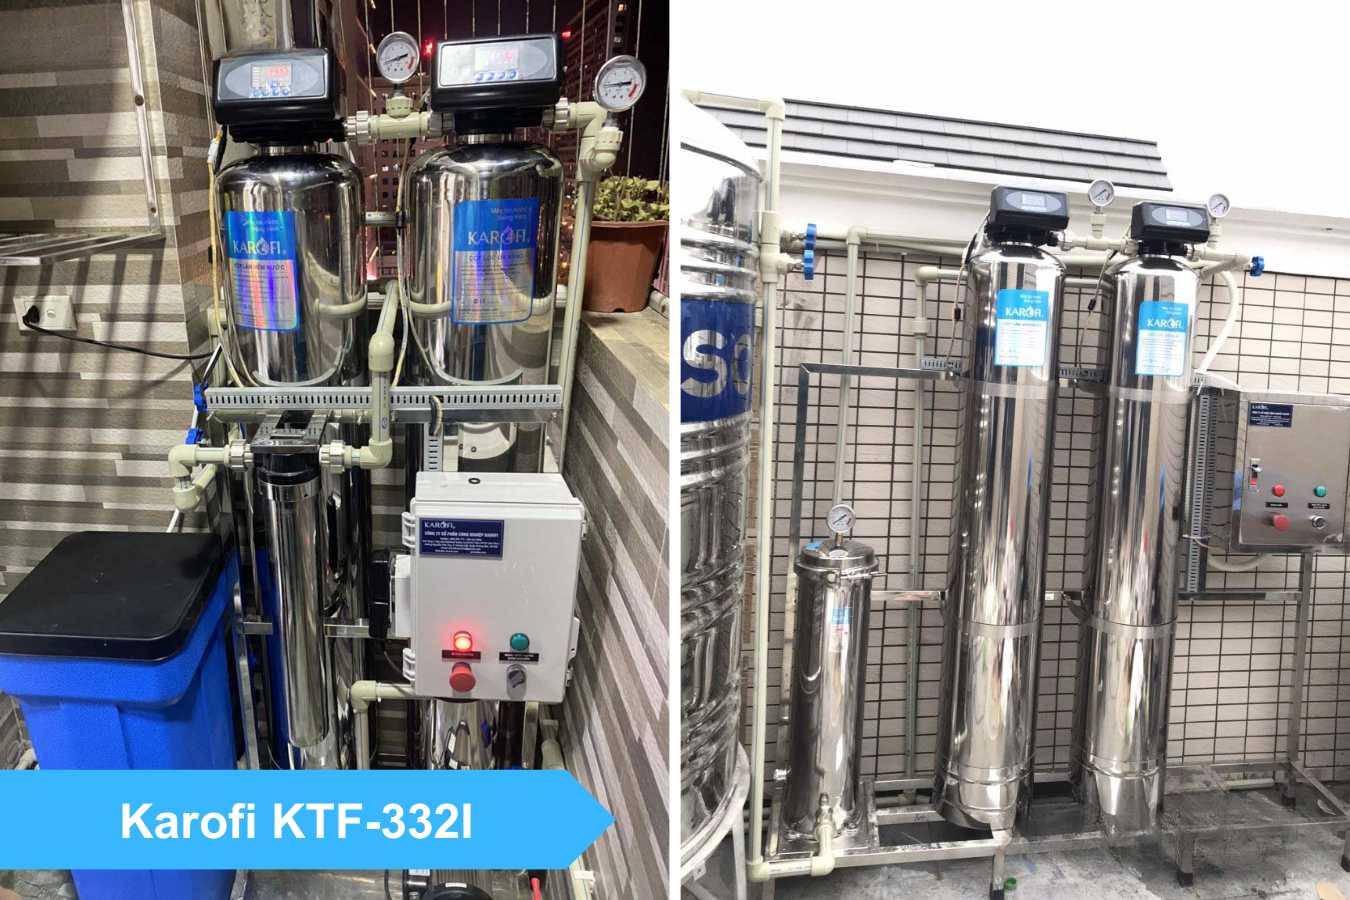  KTF-332I có khả năng làm mềm nước lên đến 1000mg/l 